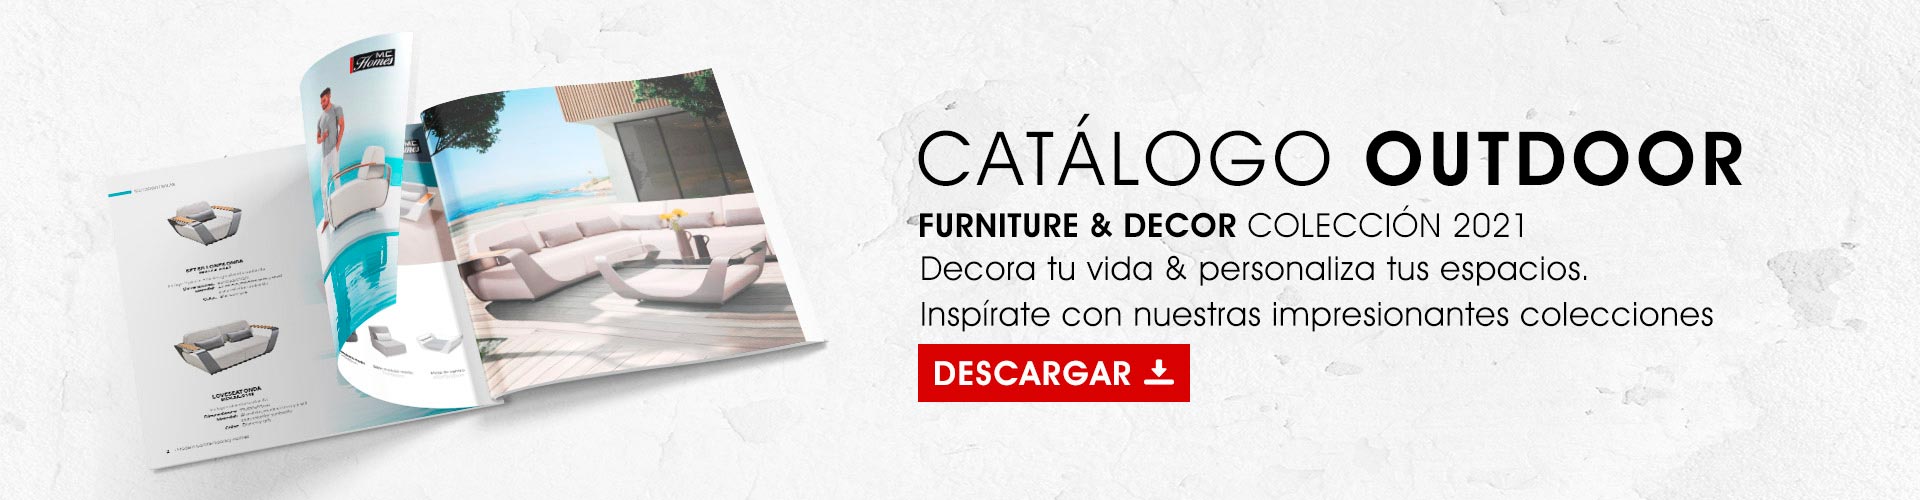 Catálogo Outdoor Furniture & Decor Colección 2021